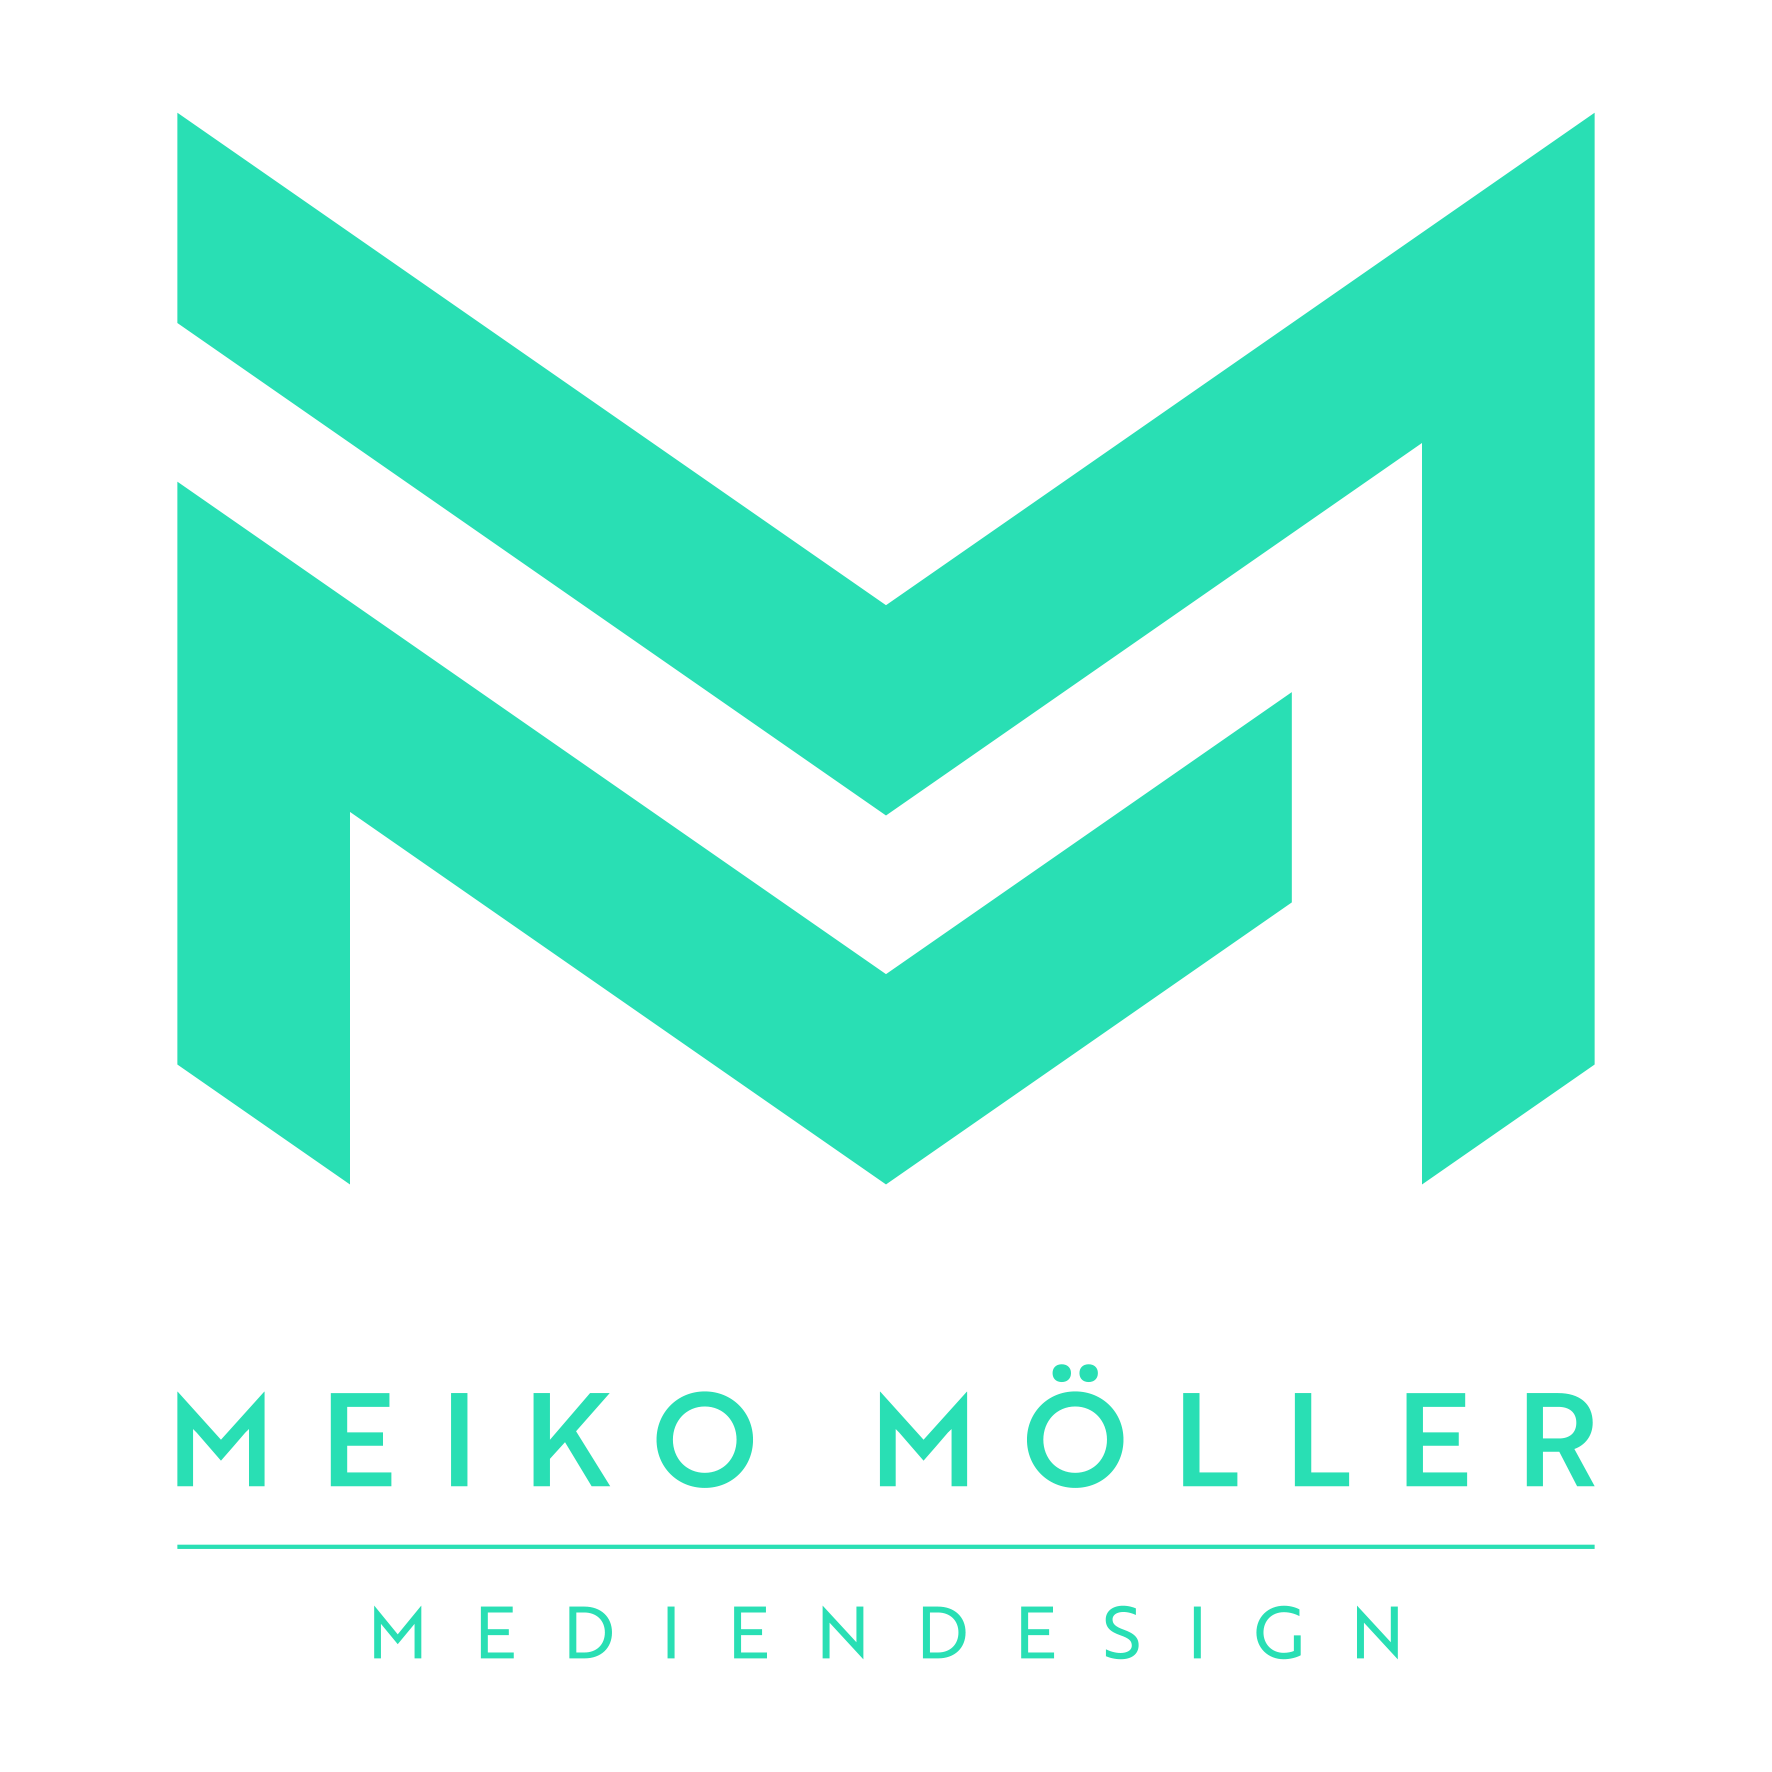 Meiko Möller Mediendesign